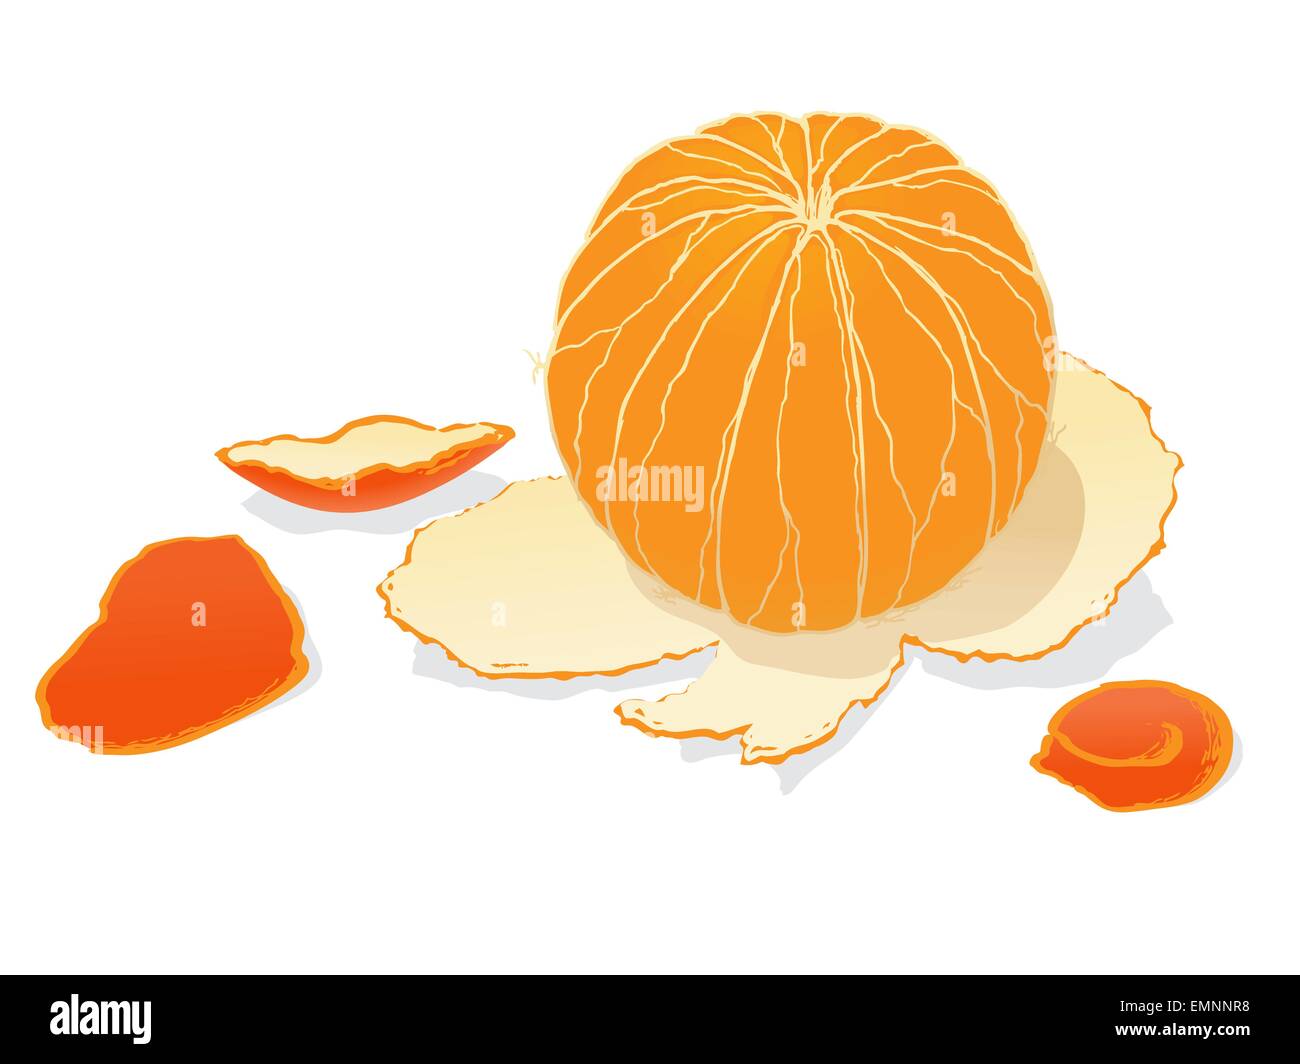 Peeled orange among the peels on white background Stock Vector